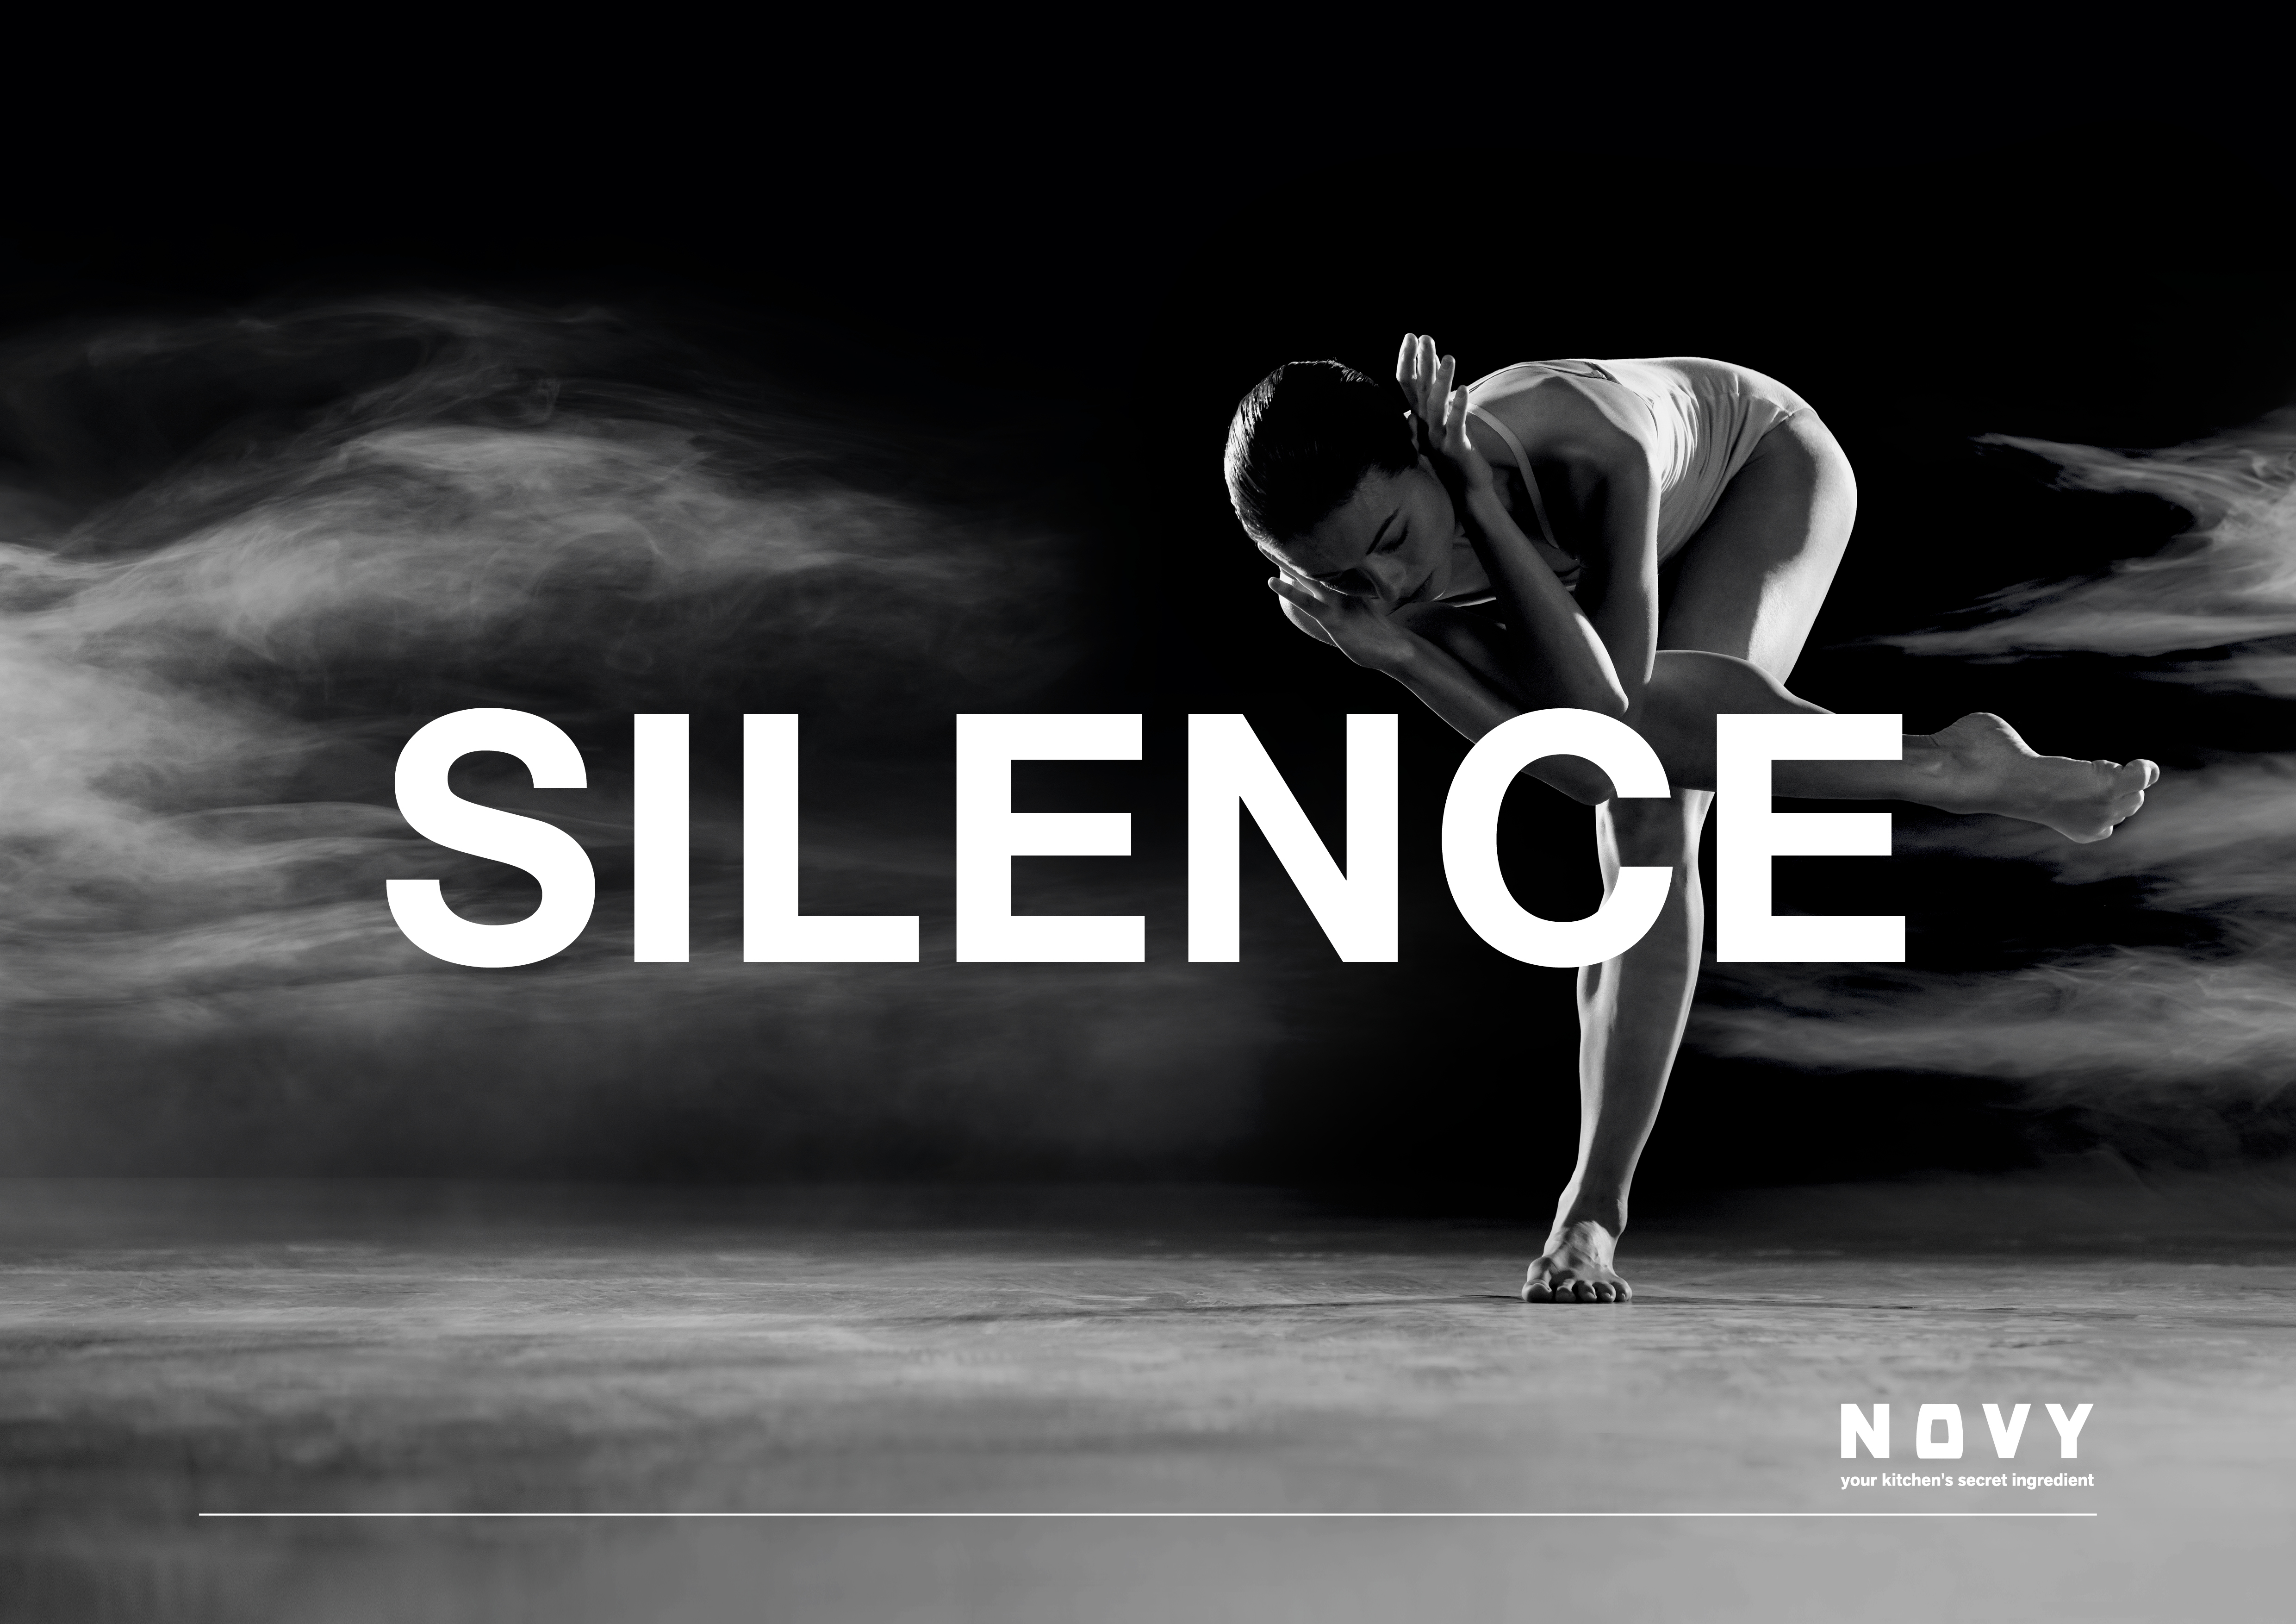 NOVY Brand Story SILENCE